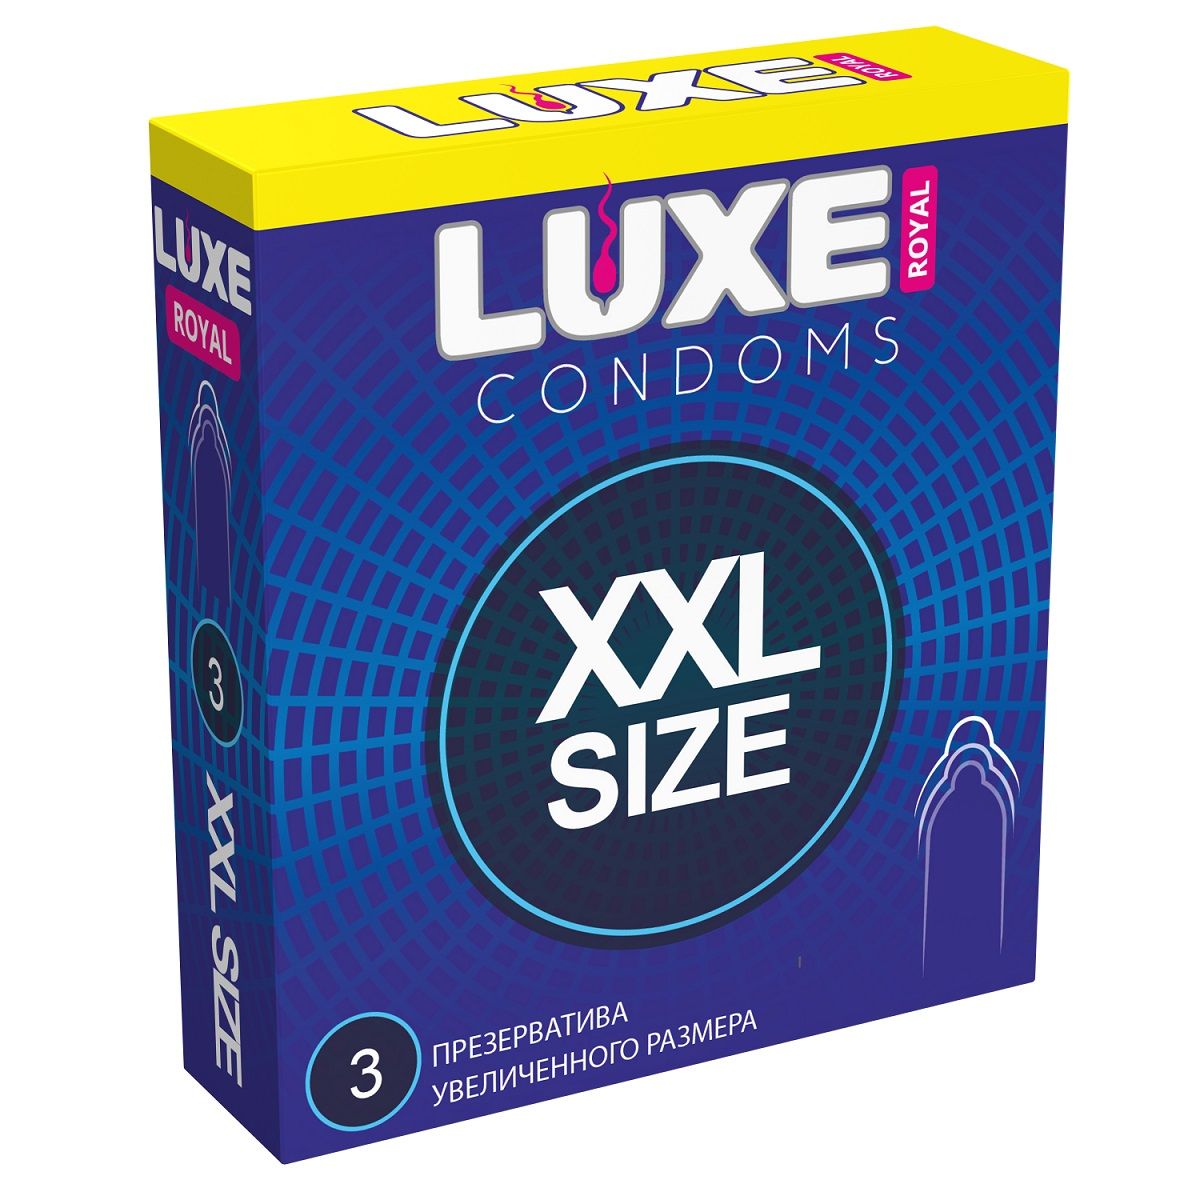 Высококачественные гладкие презервативы увеличенного размера. В фирменной упаковке содержится 3 презерватива из тонкого латекса. Ширина - 52 мм.<br> Толщина стенок - 0,06 мм.<br> В упаковке - 3 шт.